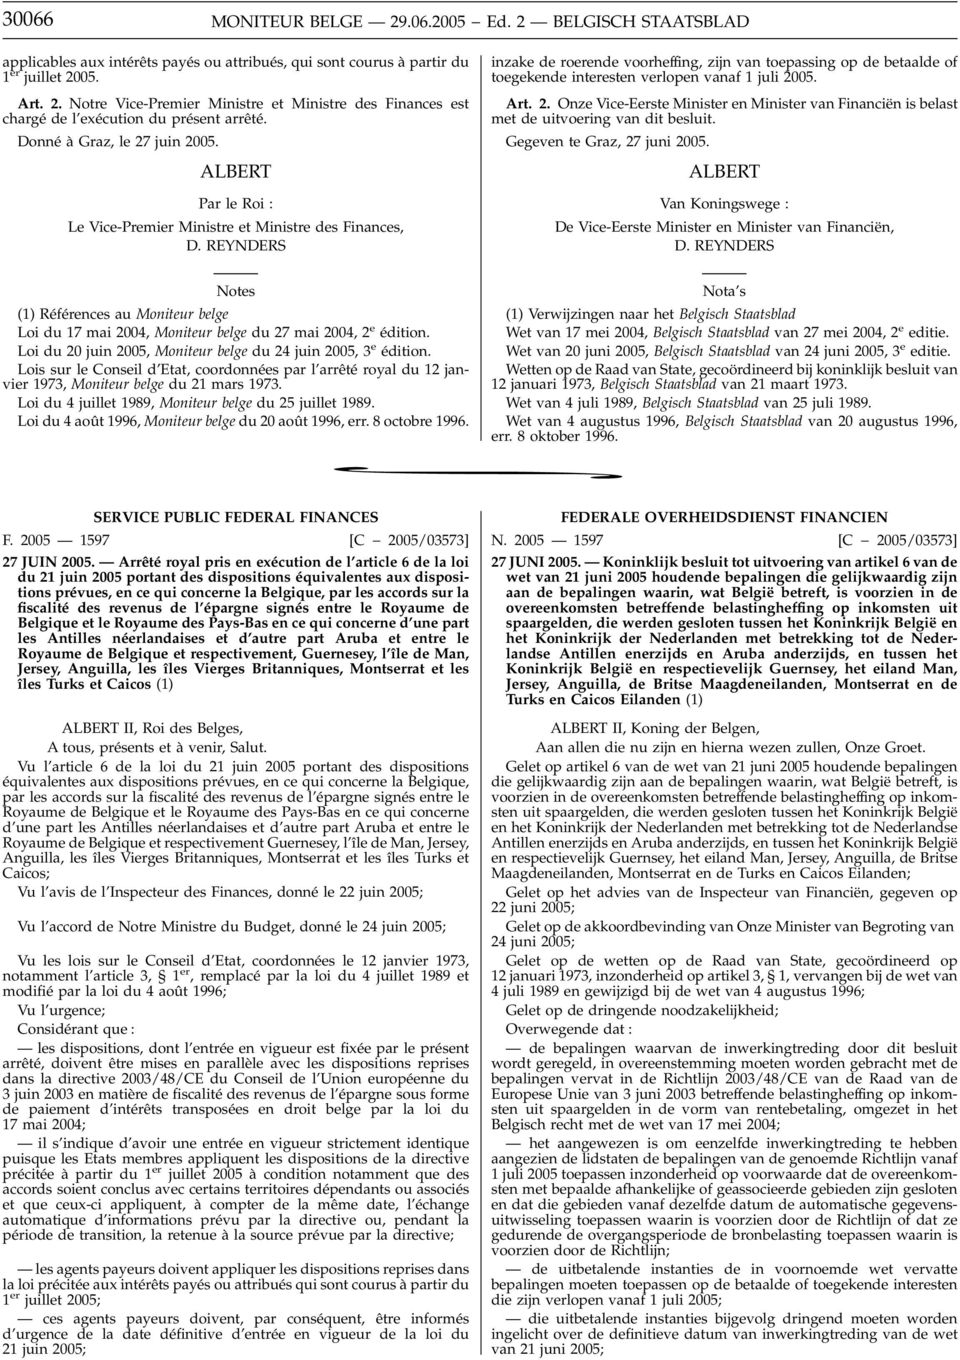 (1) Références au Moniteur belge Loi du 20 juin 2005, Moniteur belge du 24 juin 2005, 3 e édition.